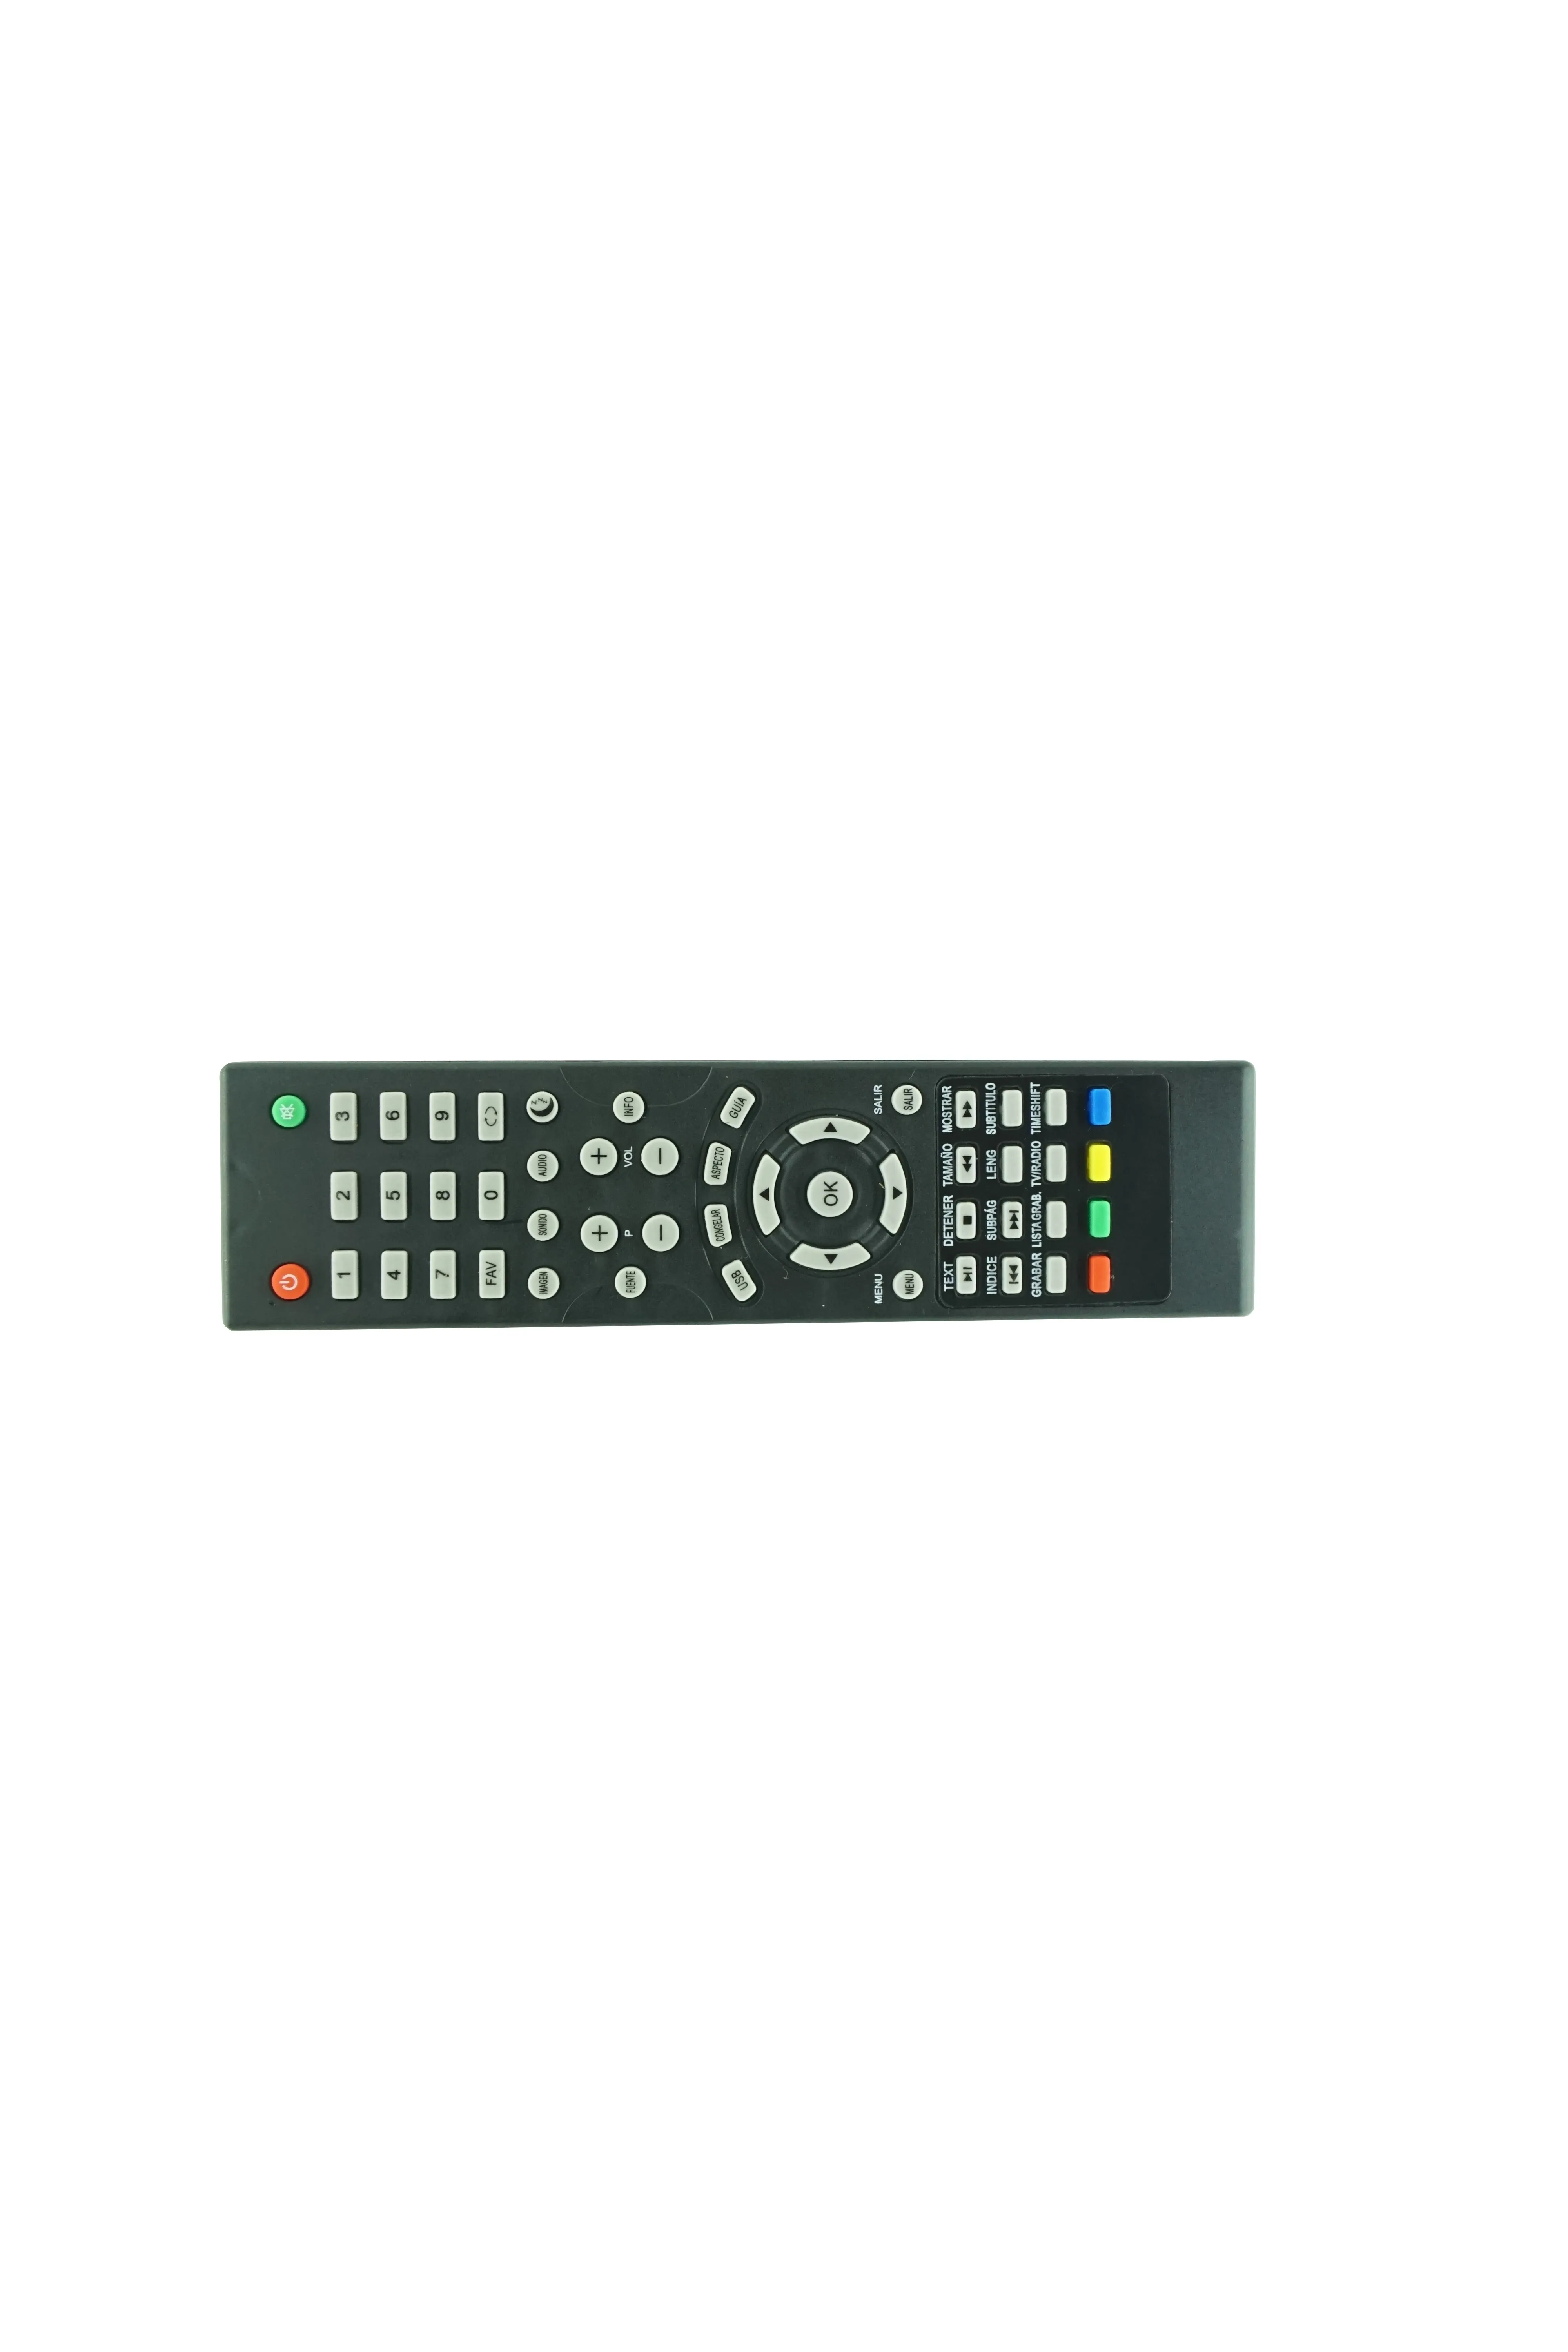 التحكم عن بُعد لـ Harper 22F470T 24R471T 28R470T 28R661T 32R470T 32R471T 50F470T 55F470T 50F470TS 22F490T SMART LCD LED HDTV TV